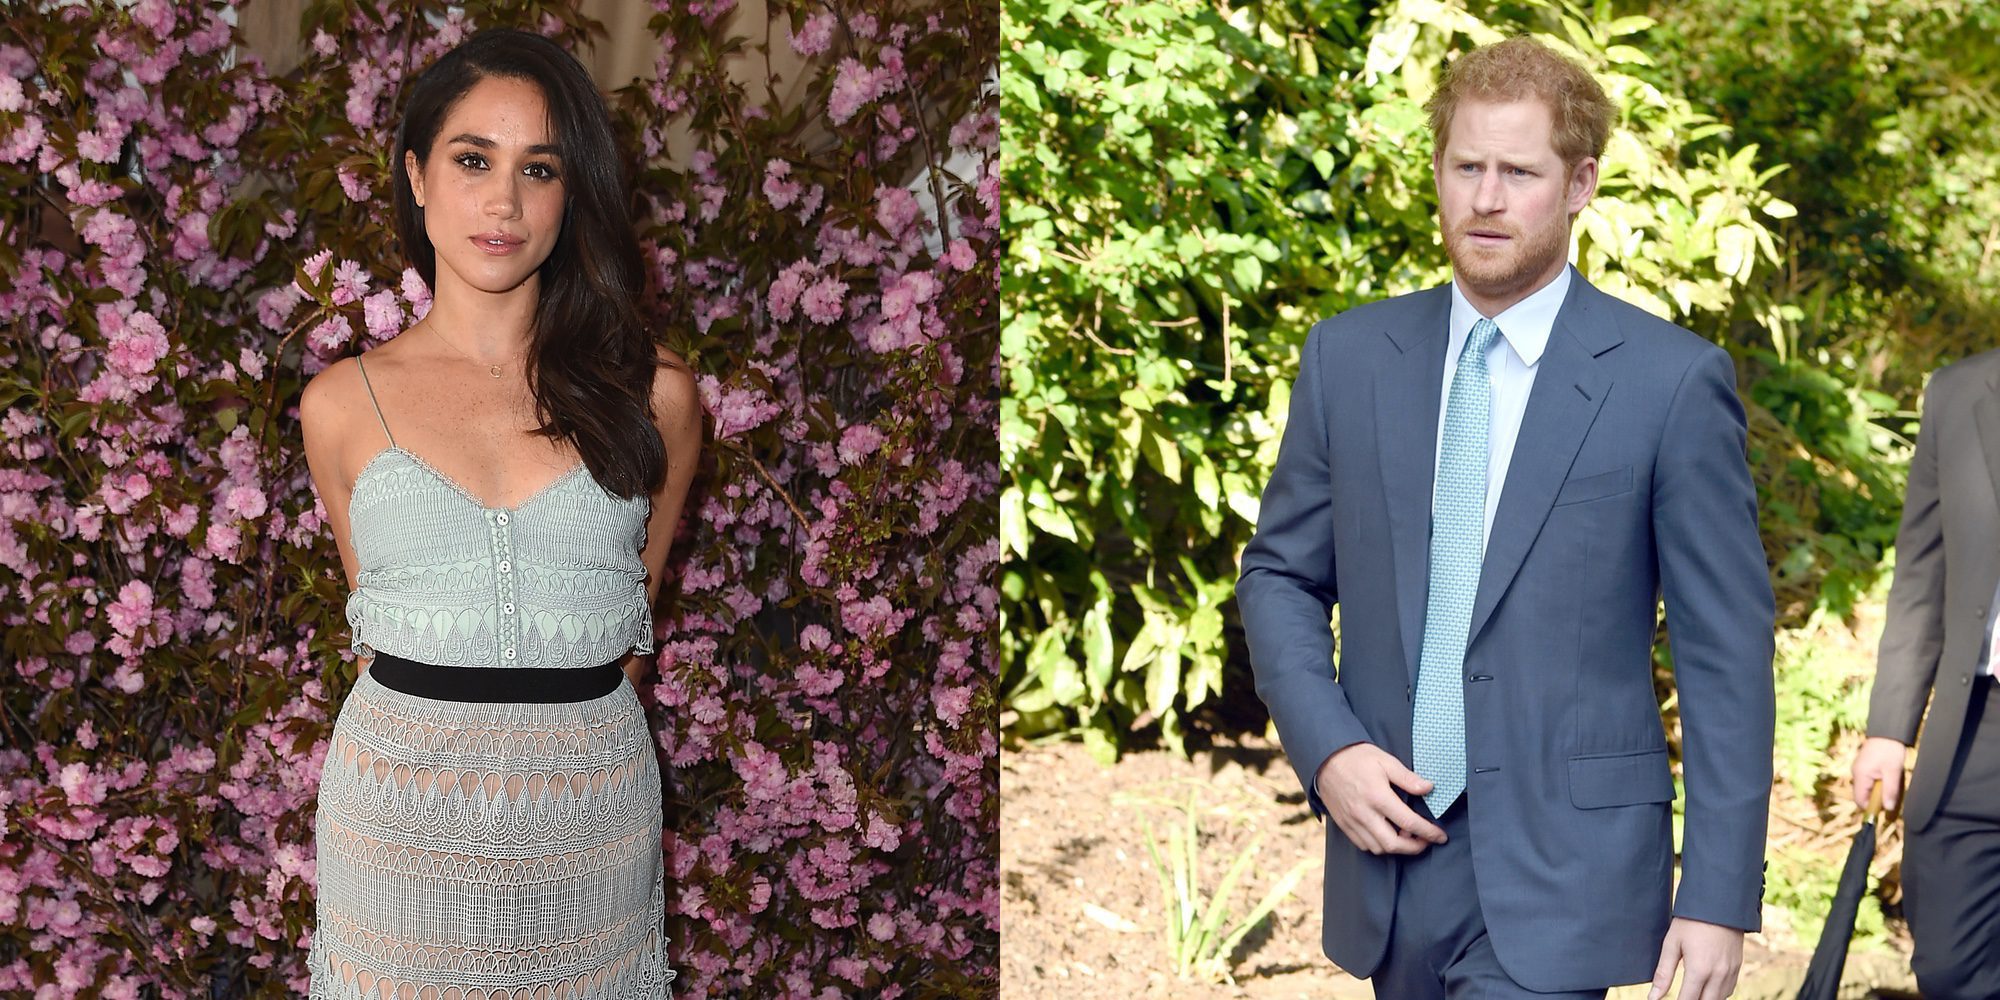 El Príncipe Harry estaría saliendo con la actriz Meghan Markle ('Suits') desde hace 5 meses